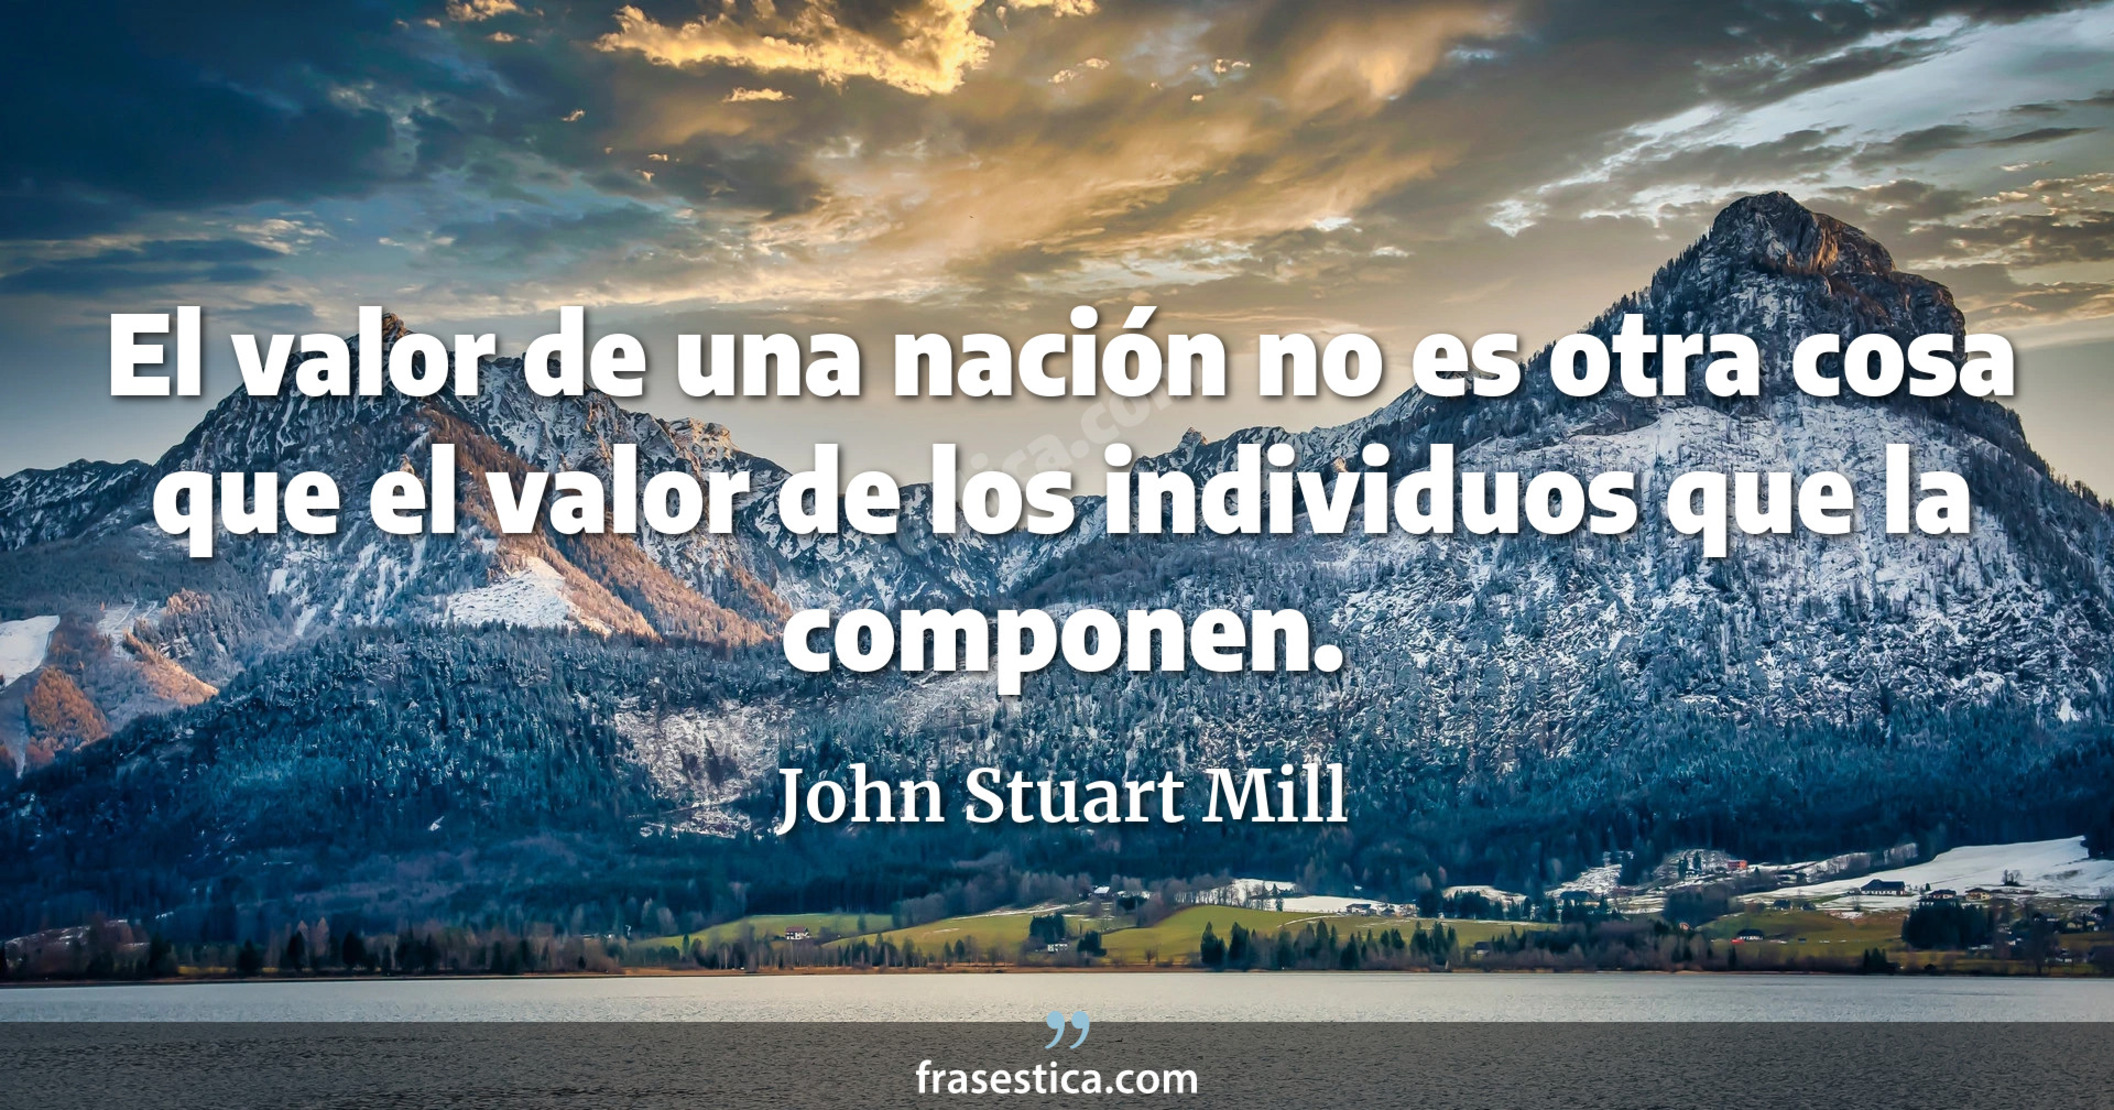 El valor de una nación no es otra cosa que el valor de los individuos que la componen. - John Stuart Mill